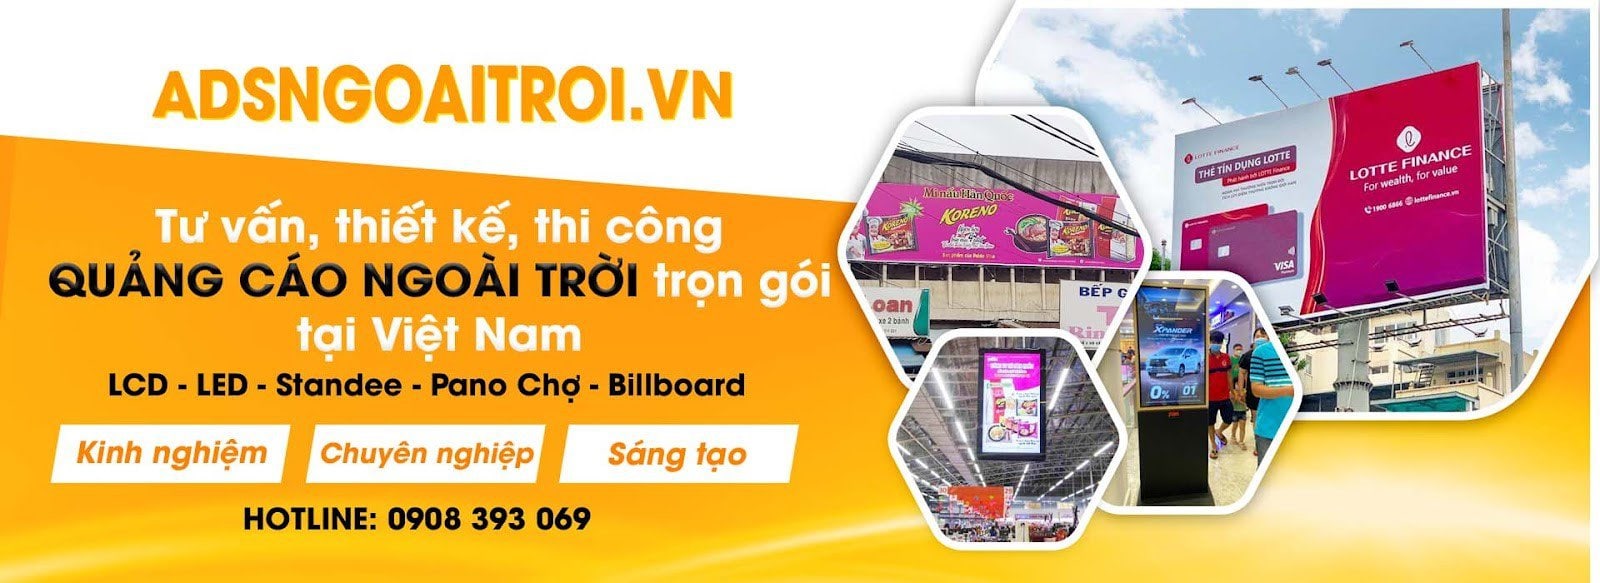 - Quảng Cáo Billboard Tại 233F Đinh Tiên Hoàng, Quận 1, TpHCM